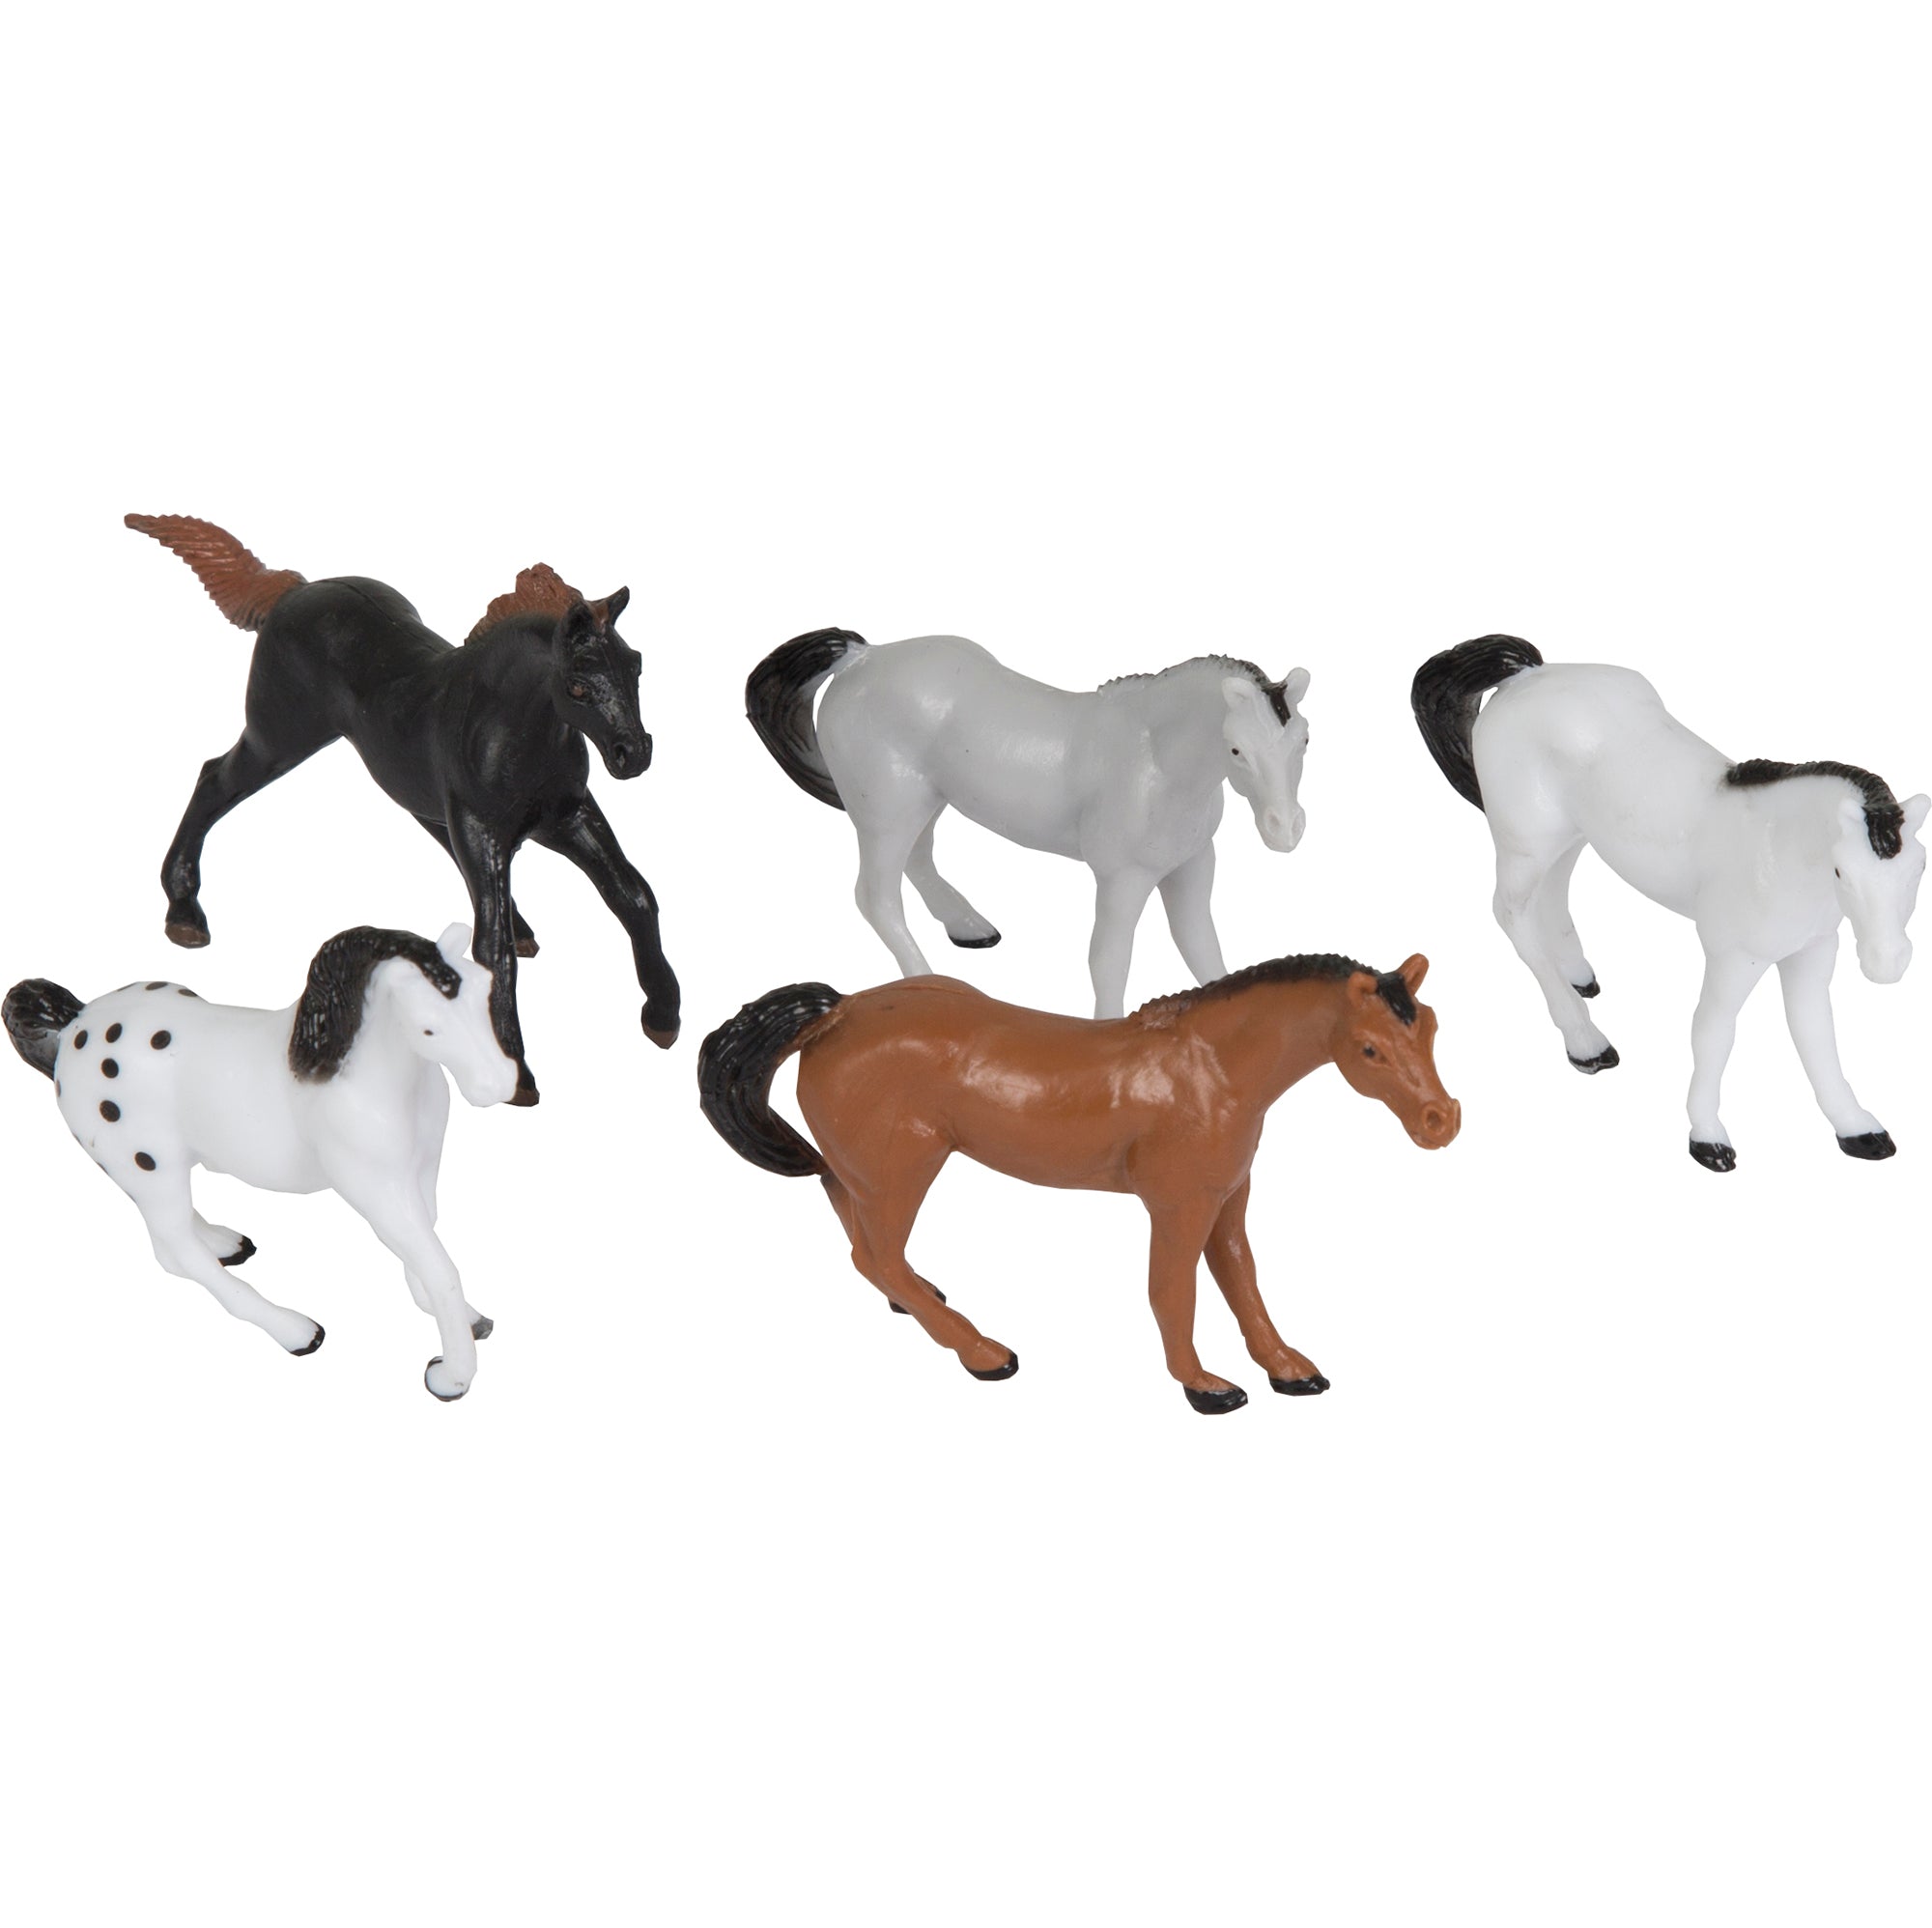 10 Figurines Horses Plastic 1.75x2.5in